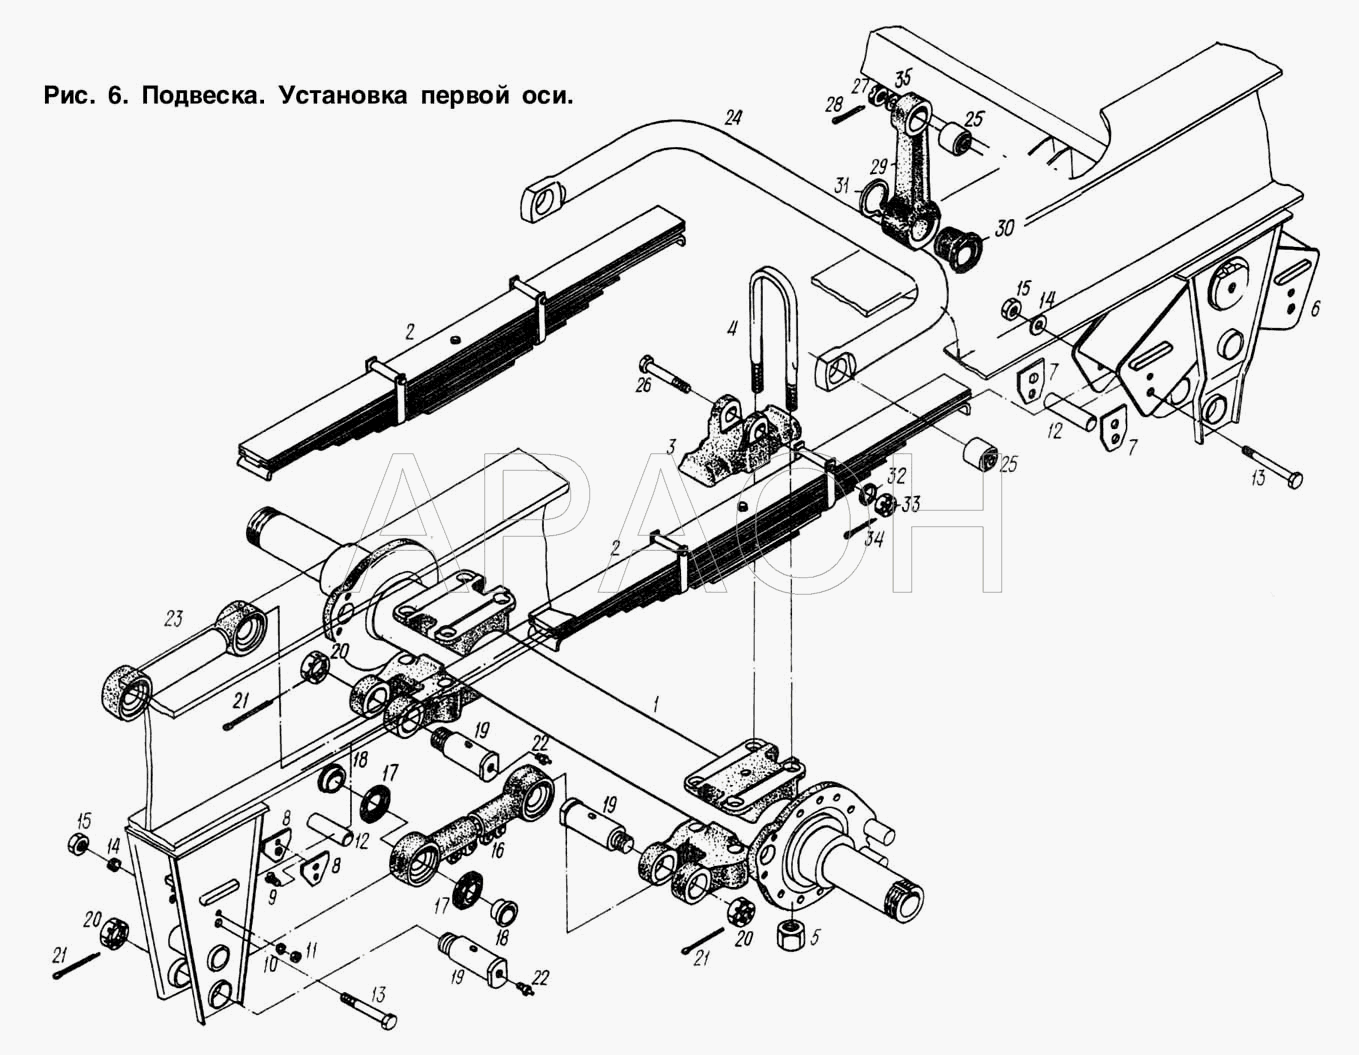 Подвеска. Установка первой оси МАЗ-93892